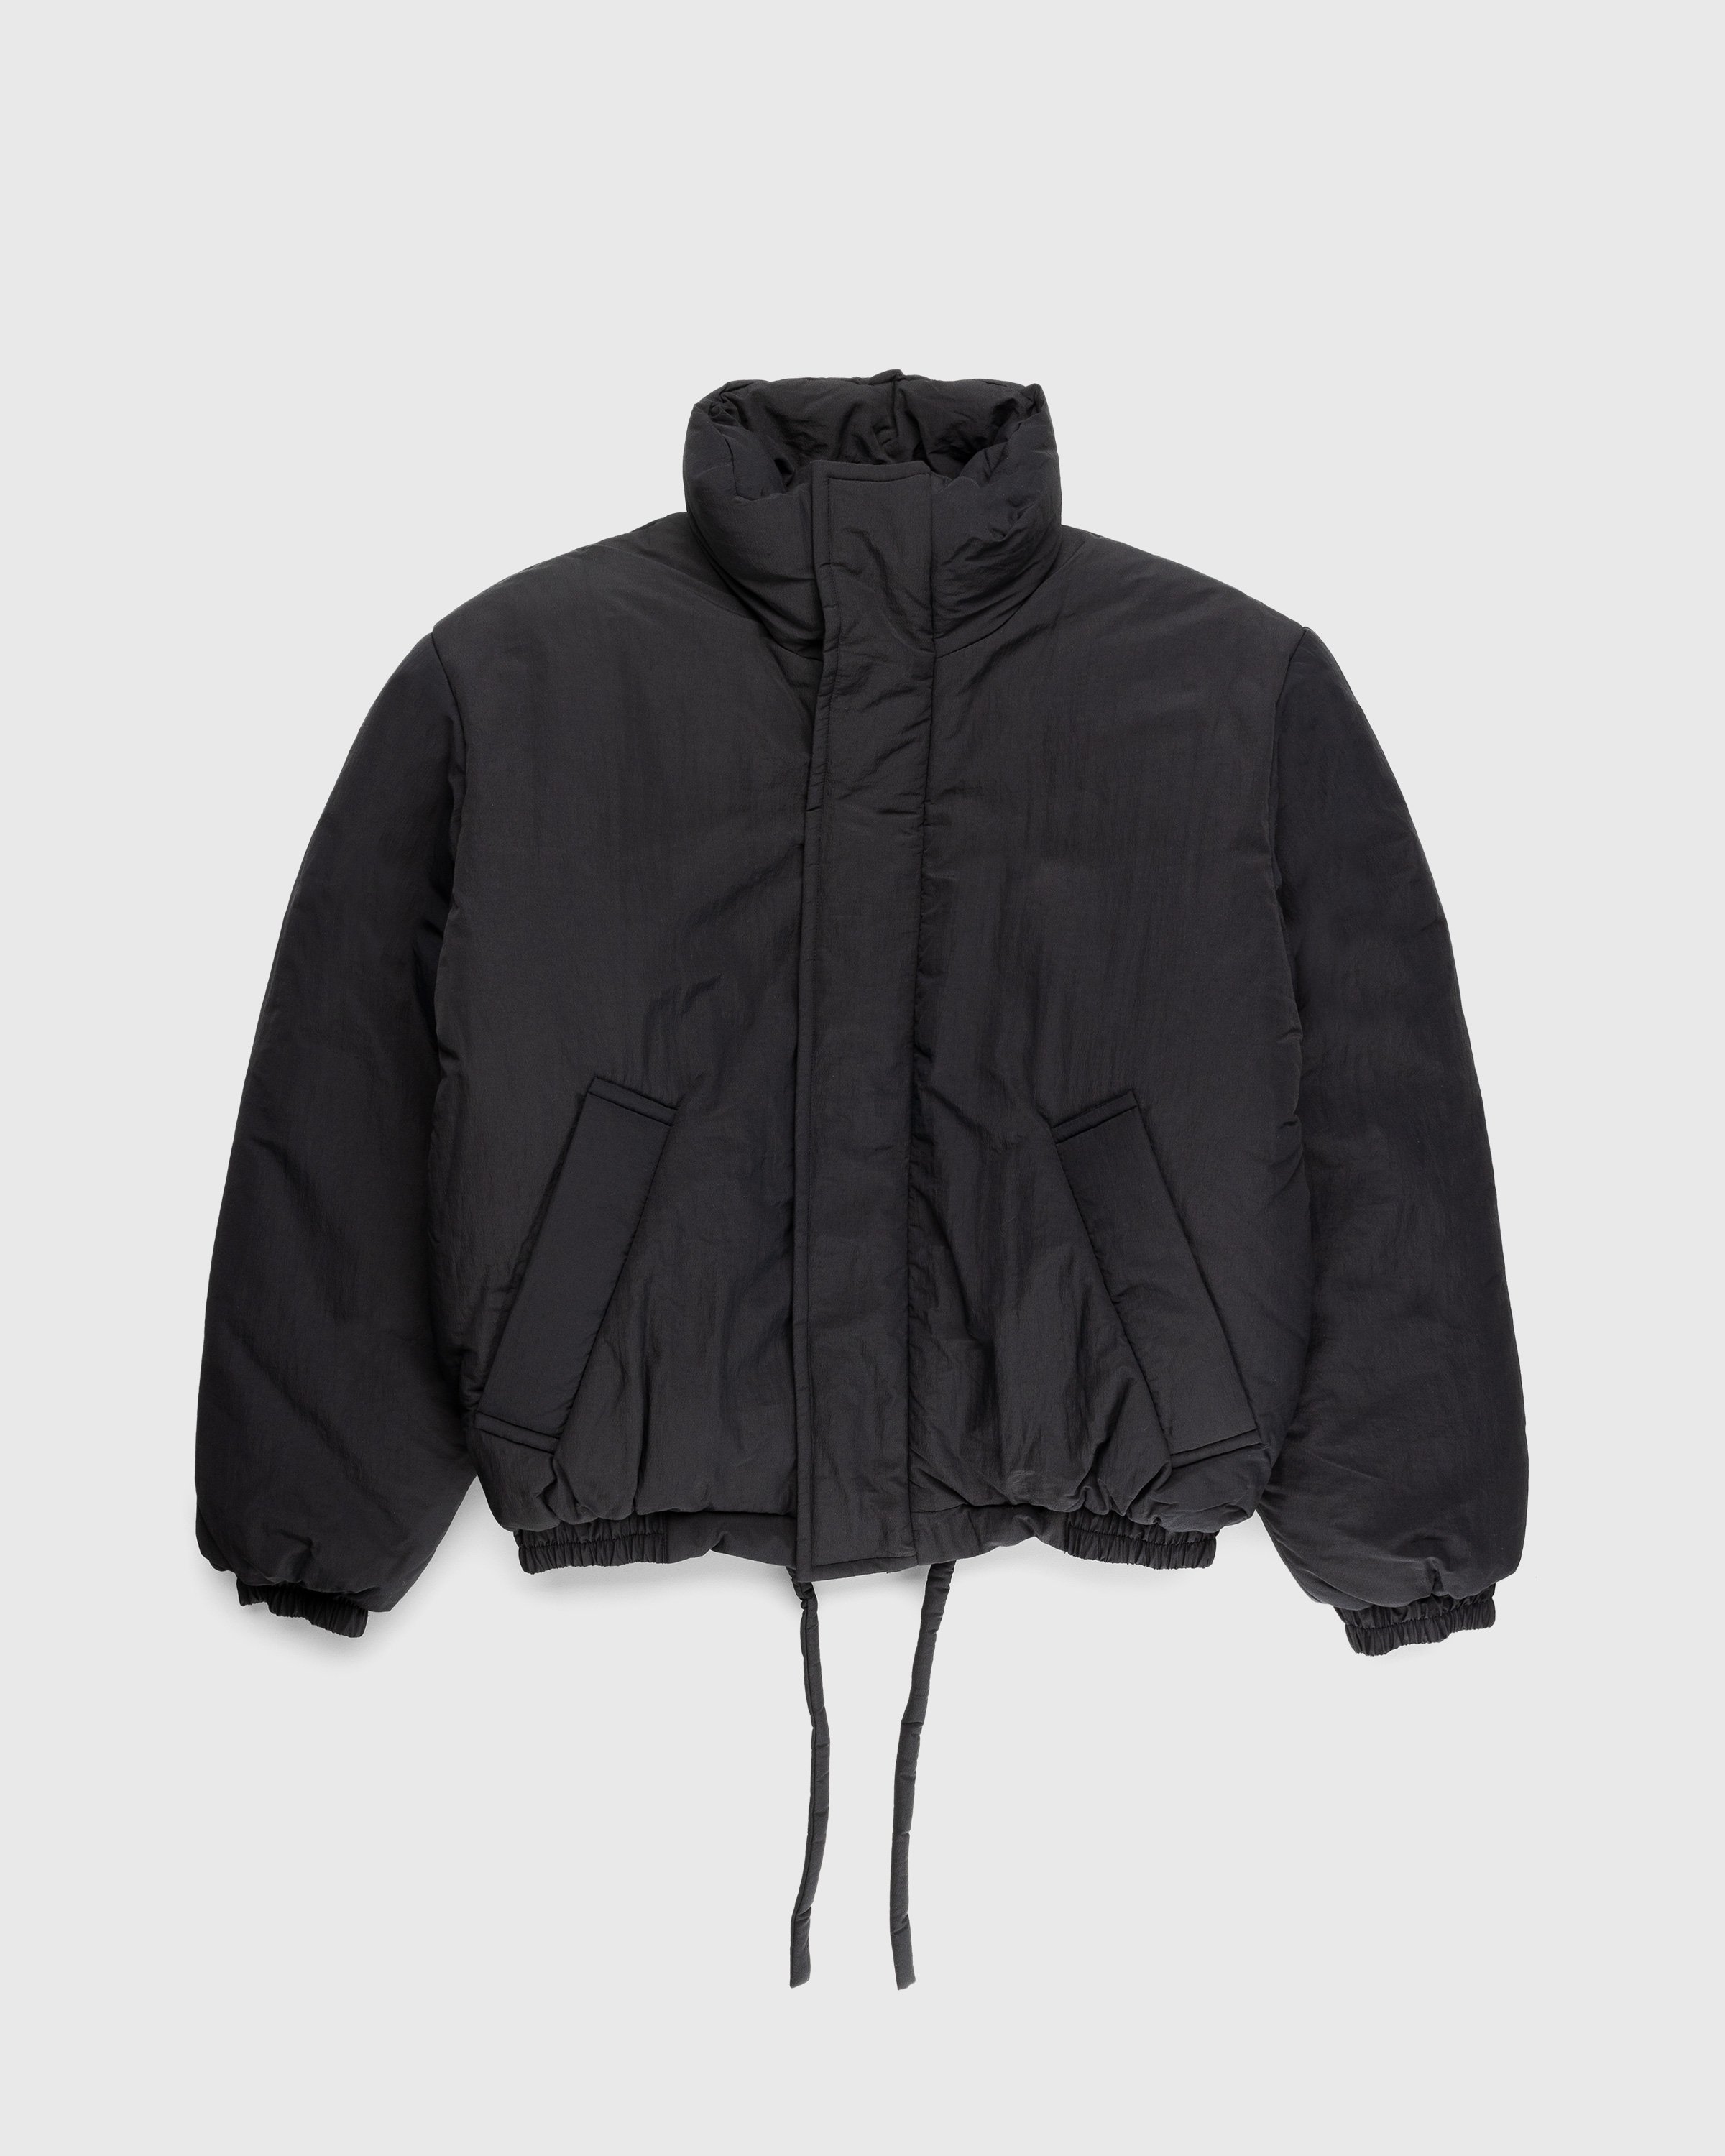 Acne Studios - Padded Nylon Jacket Black - Clothing - Black - Image 1